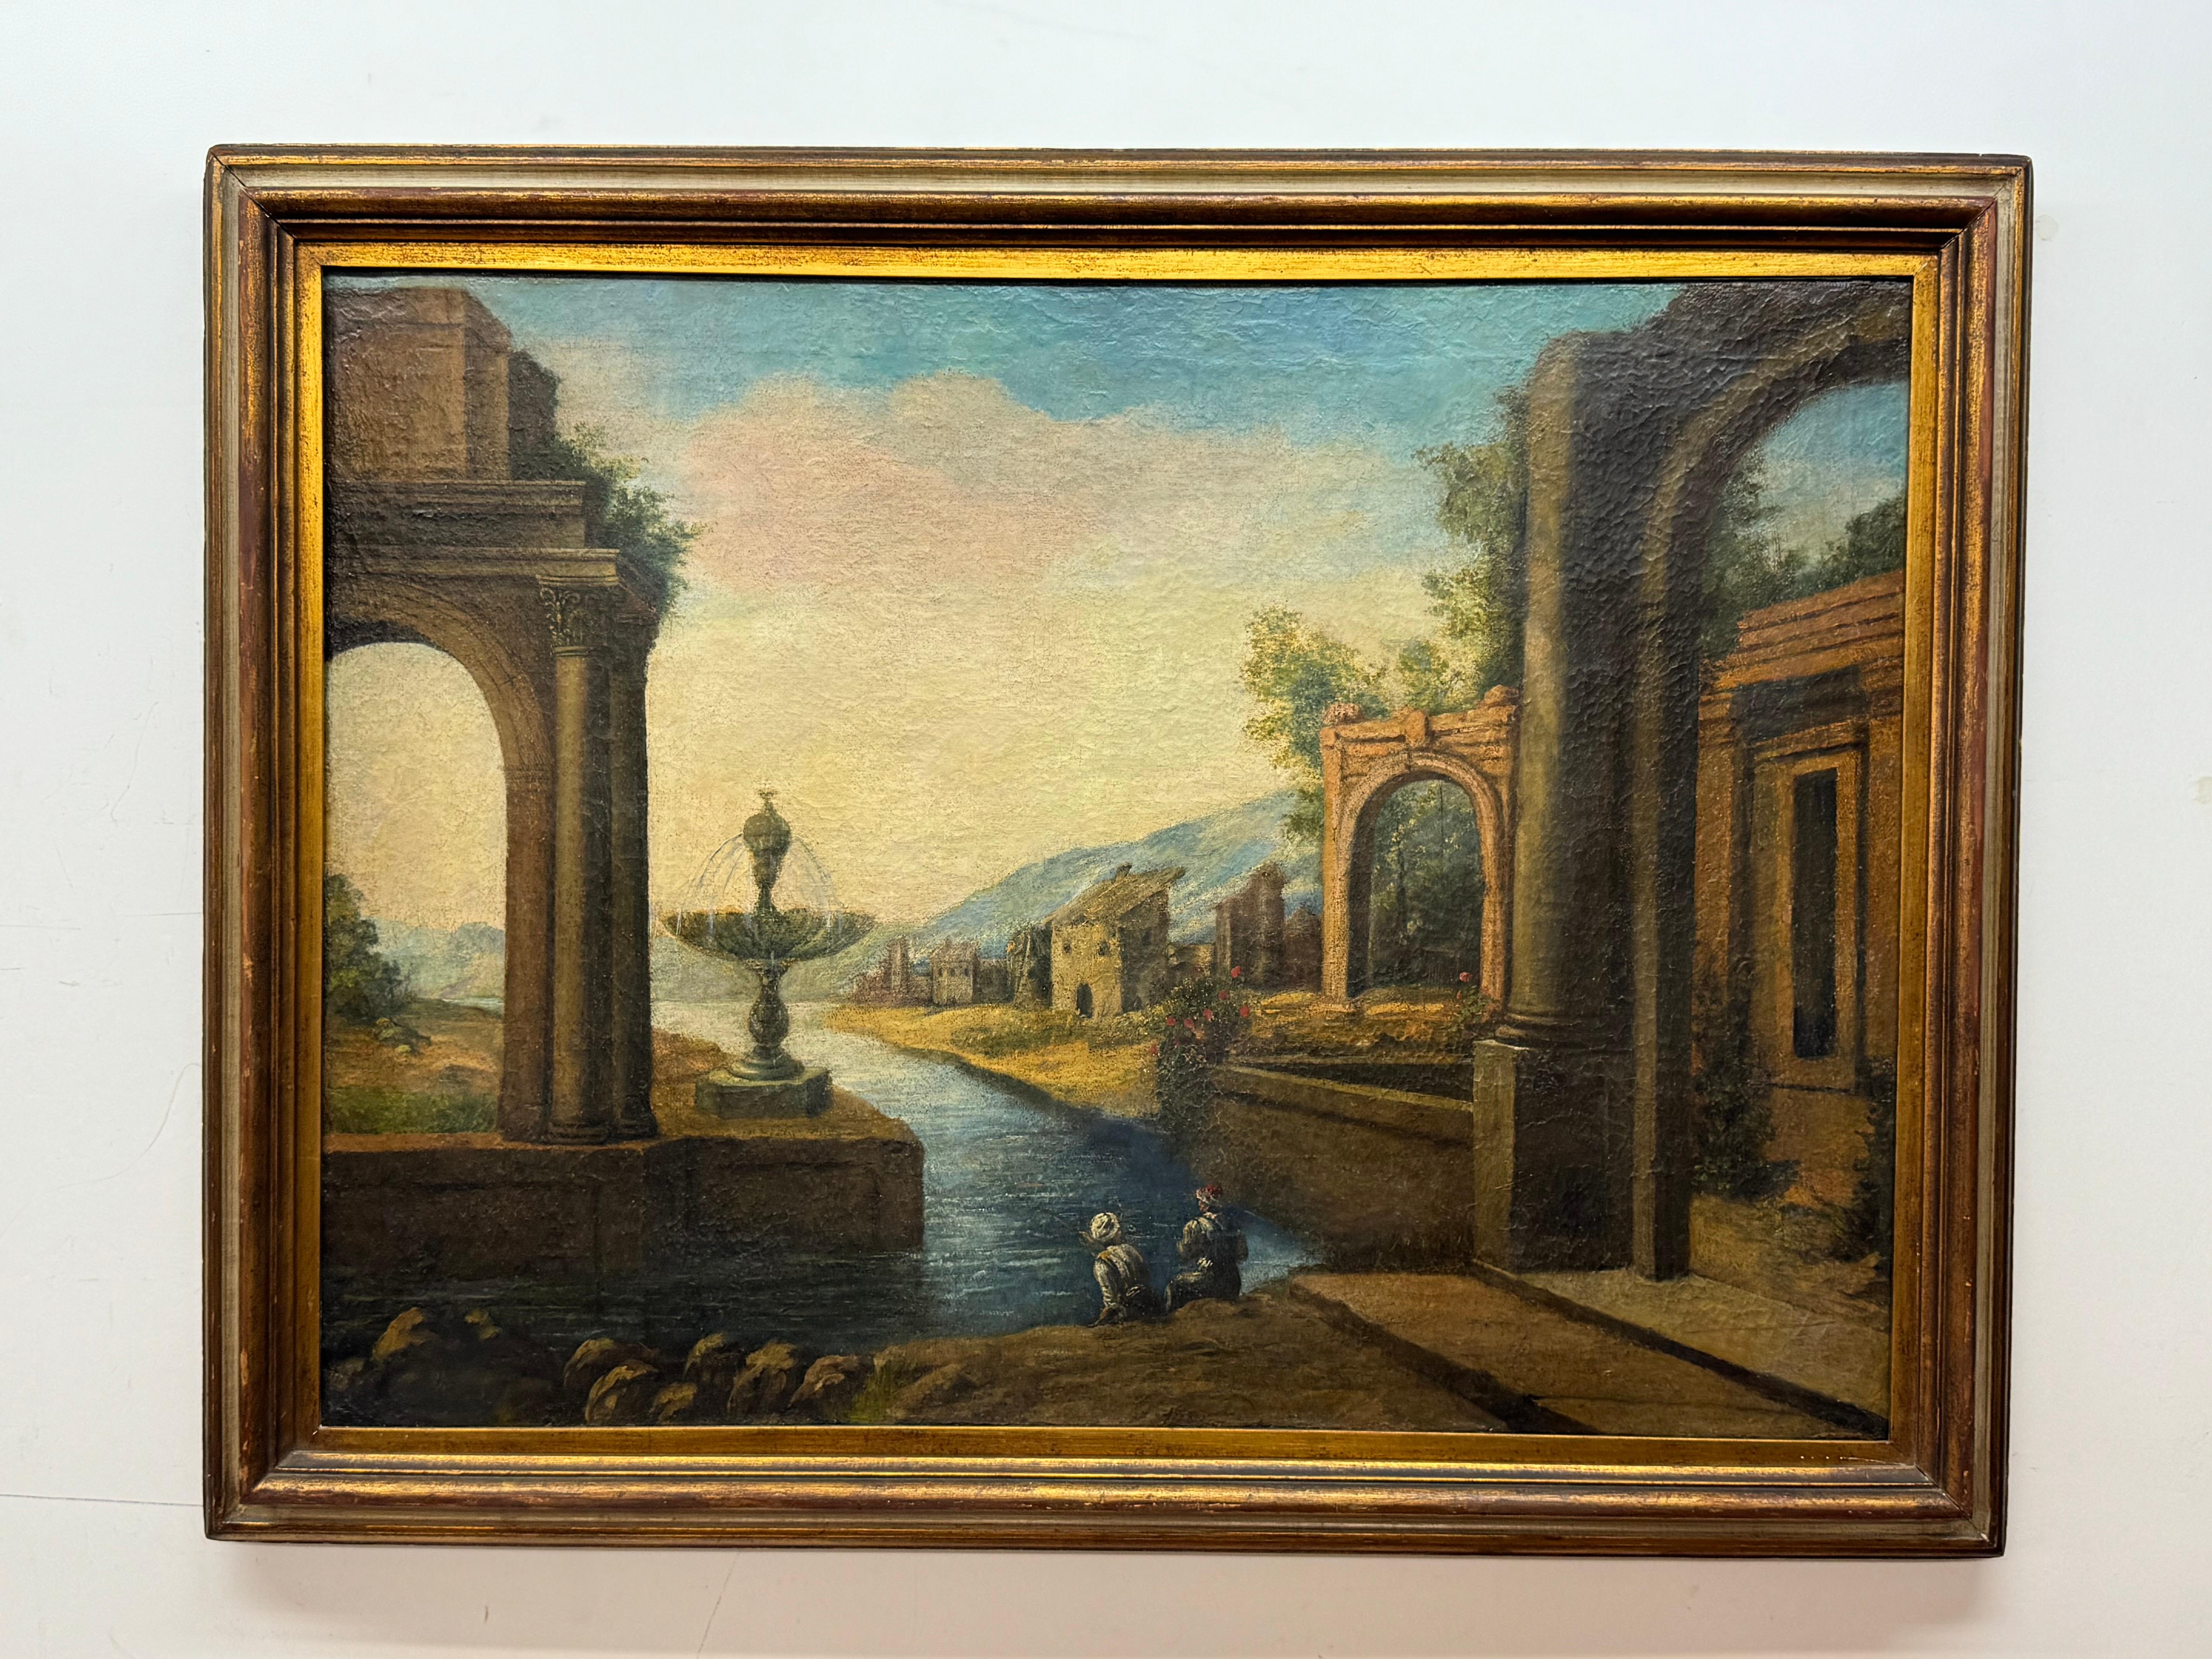 Landscape Painting Unknown - Début du 20e siècle, paysage méditerranéen italien avec deux personnages en train de pêcher